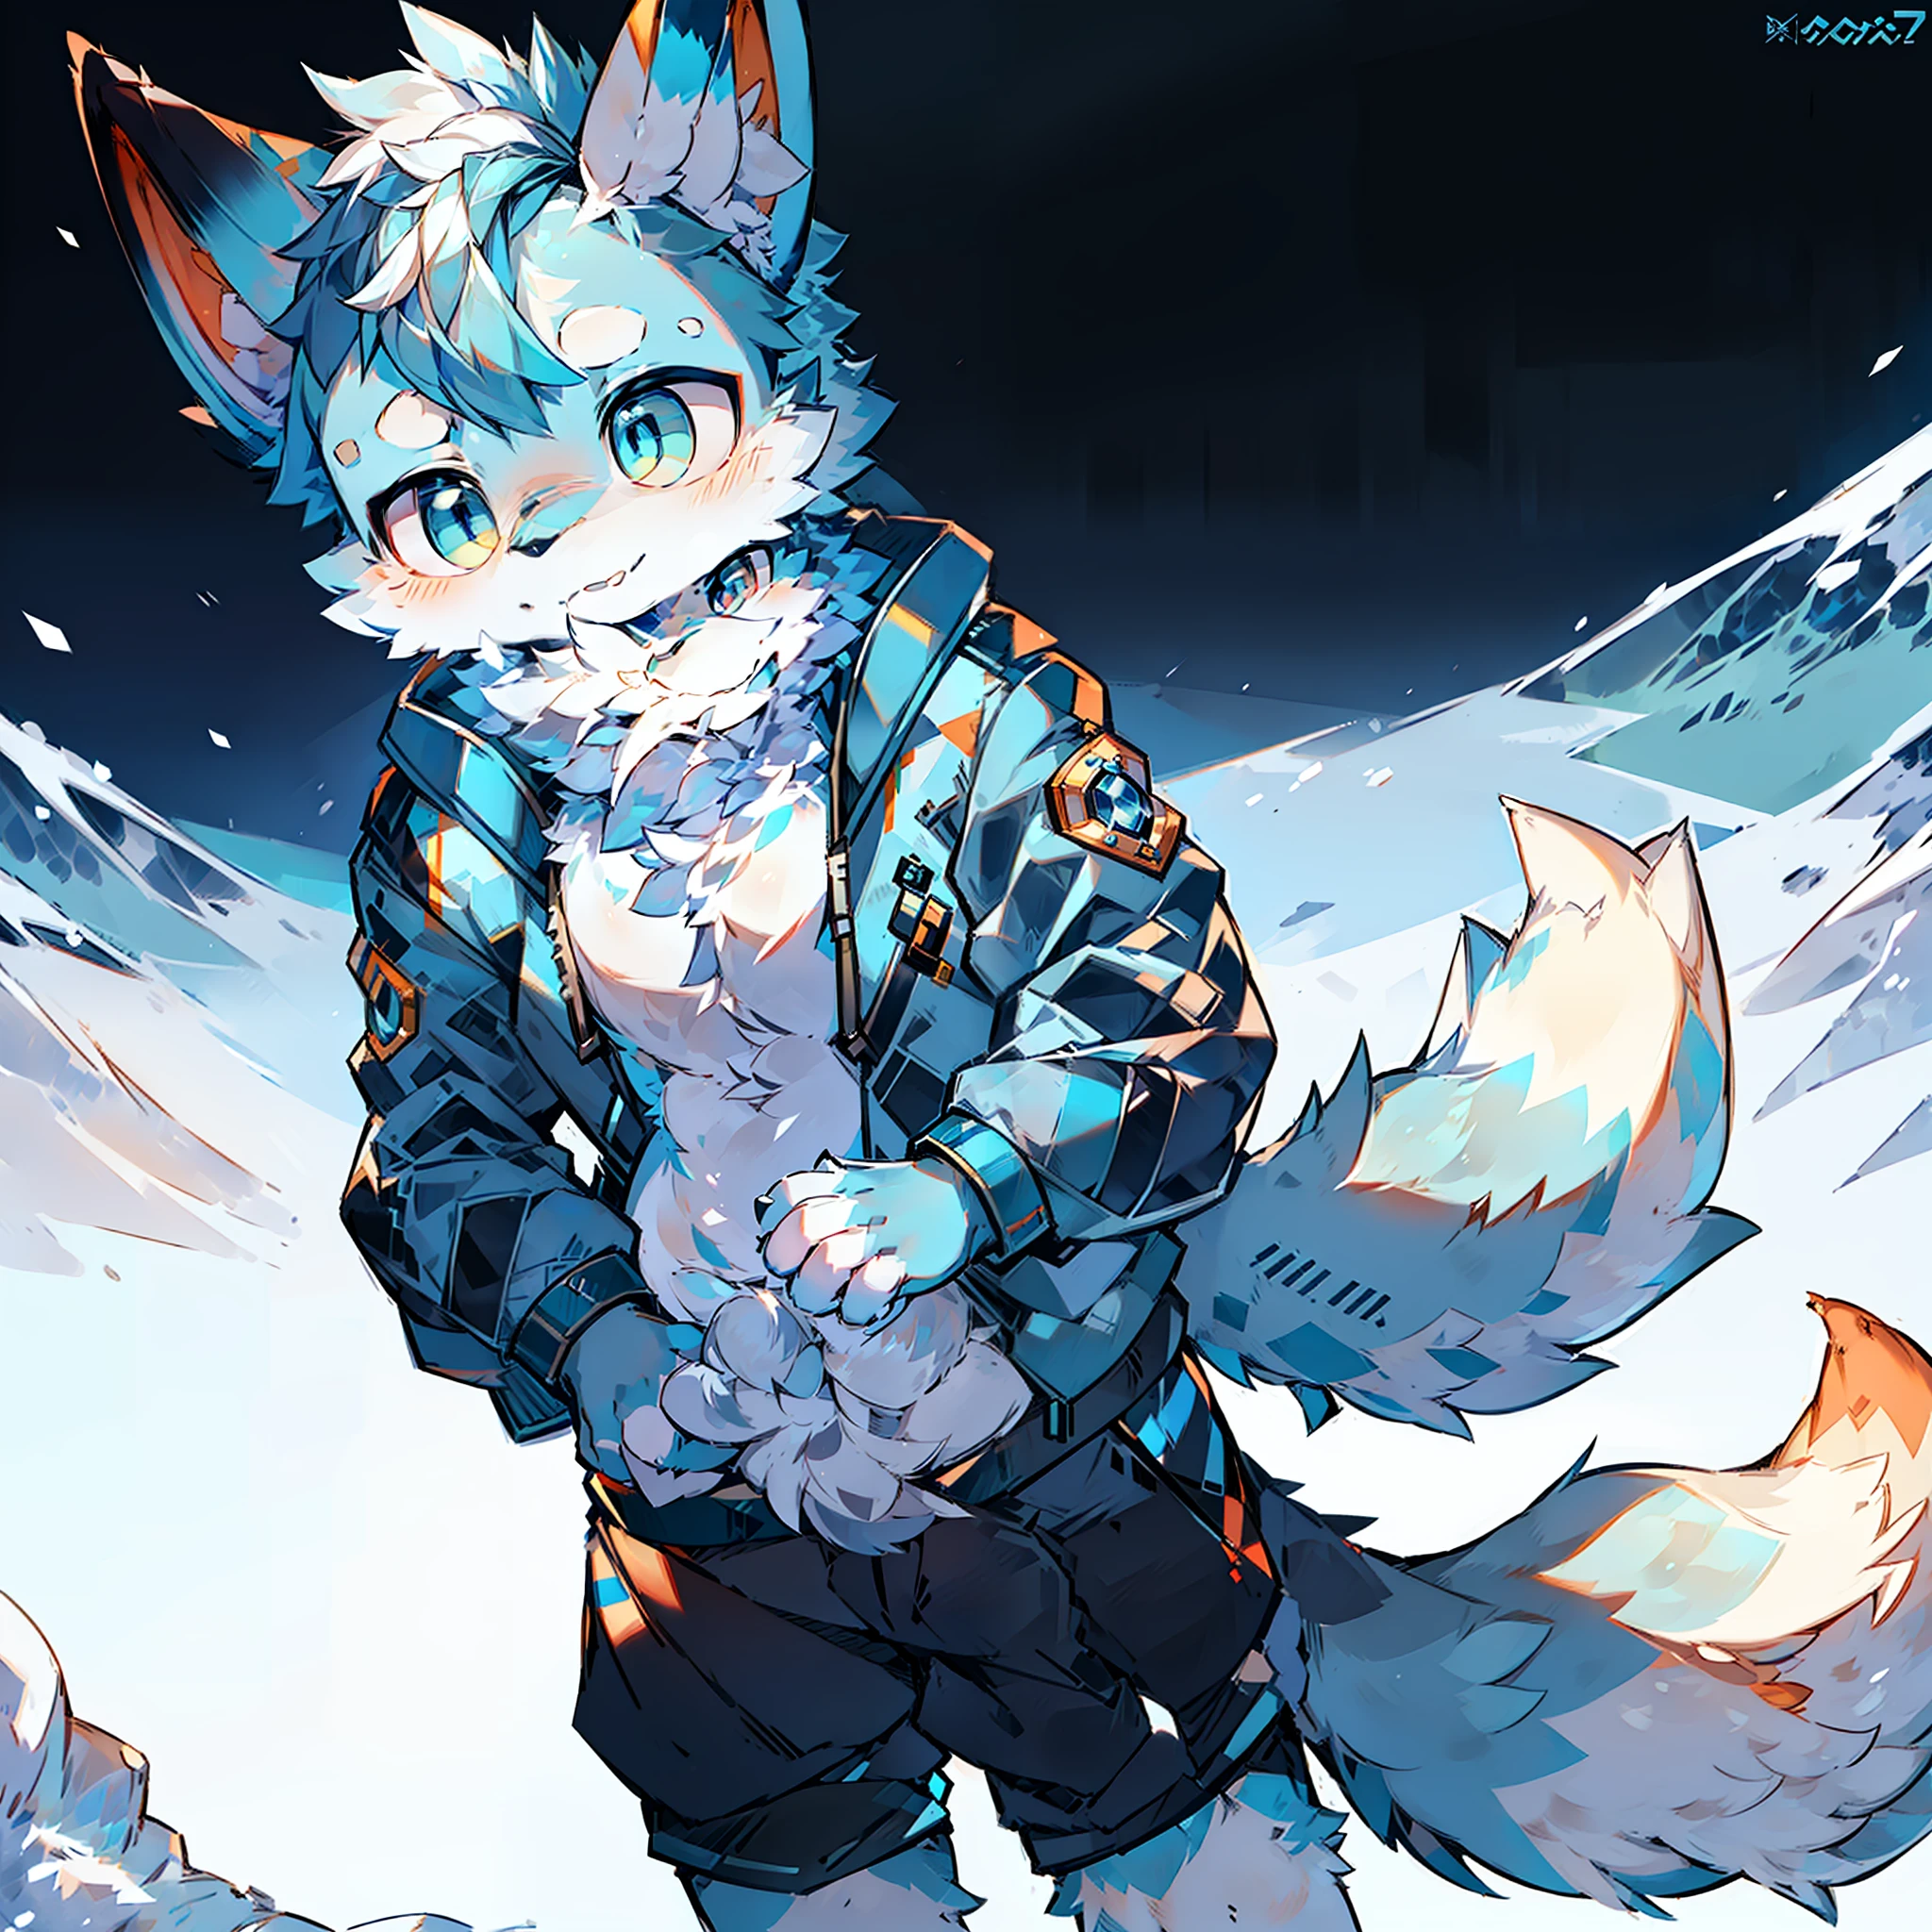 Macho peludo com dois padrões azuis e brancos de raposa, pupilas brilhantes, cauda grande, vestindo jaqueta de algodão azul, neve, montanha, neve